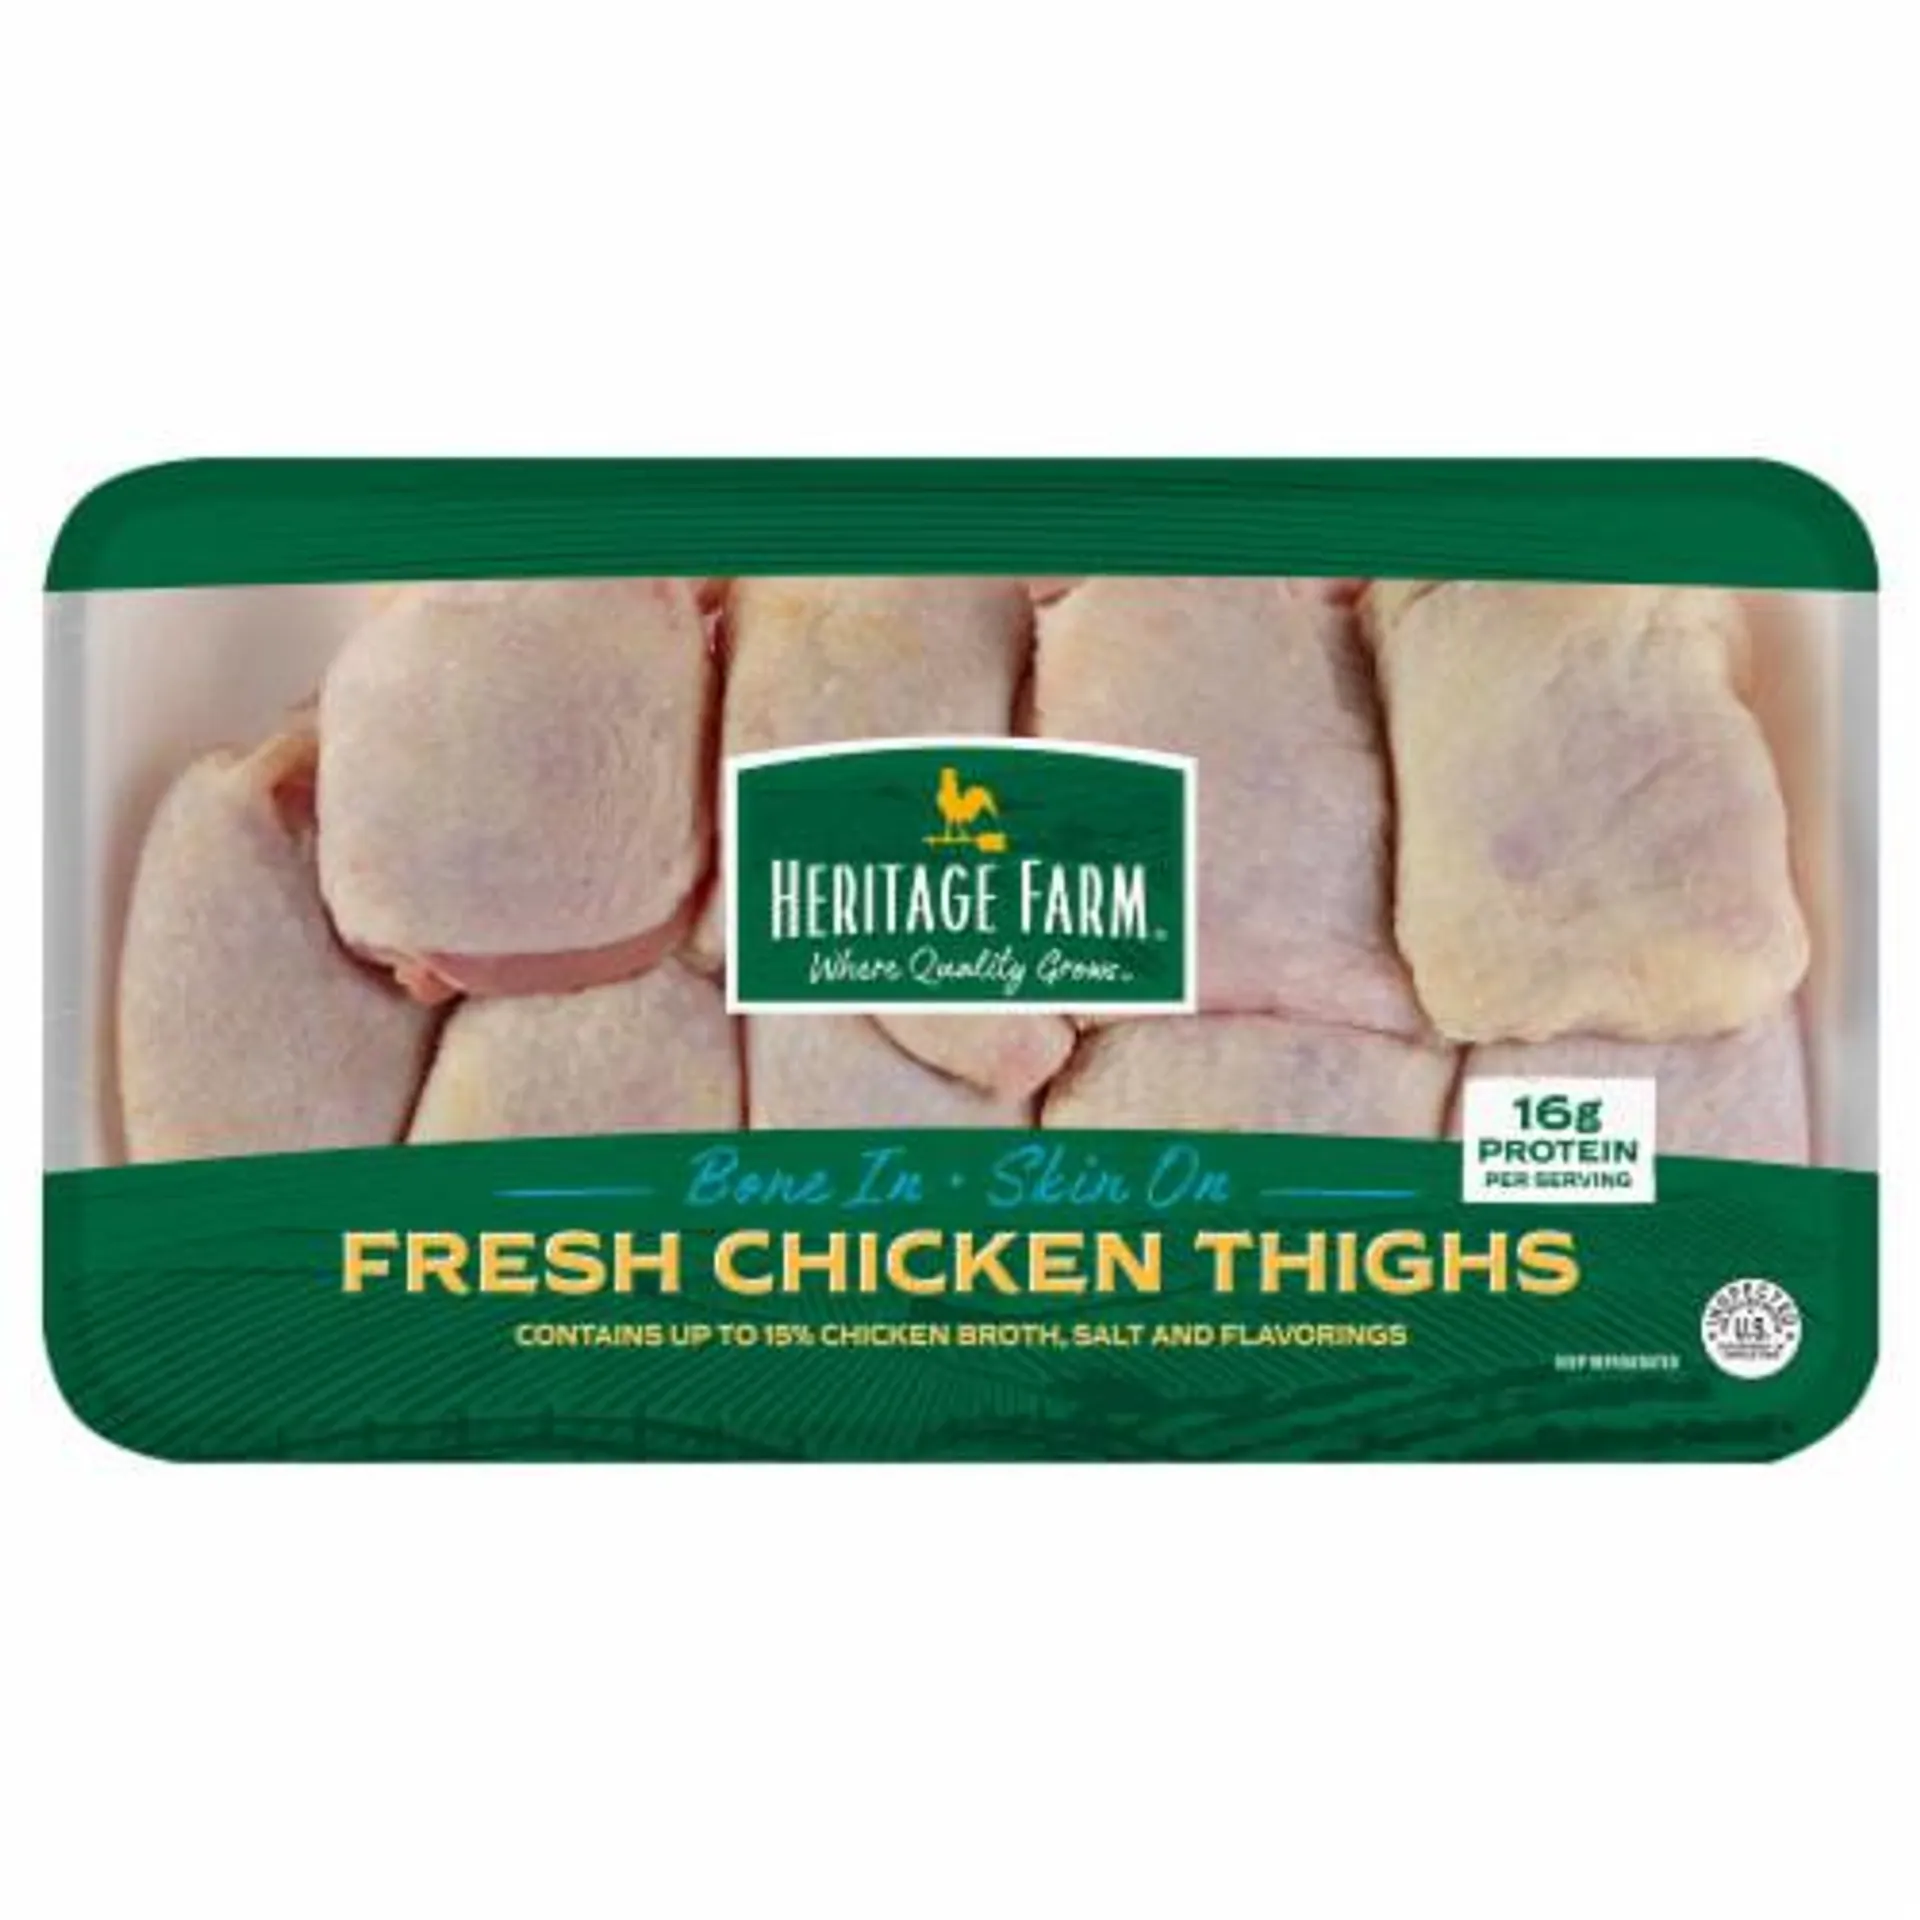 Heritage Farm Bone In & Skin On Chicken Thighs